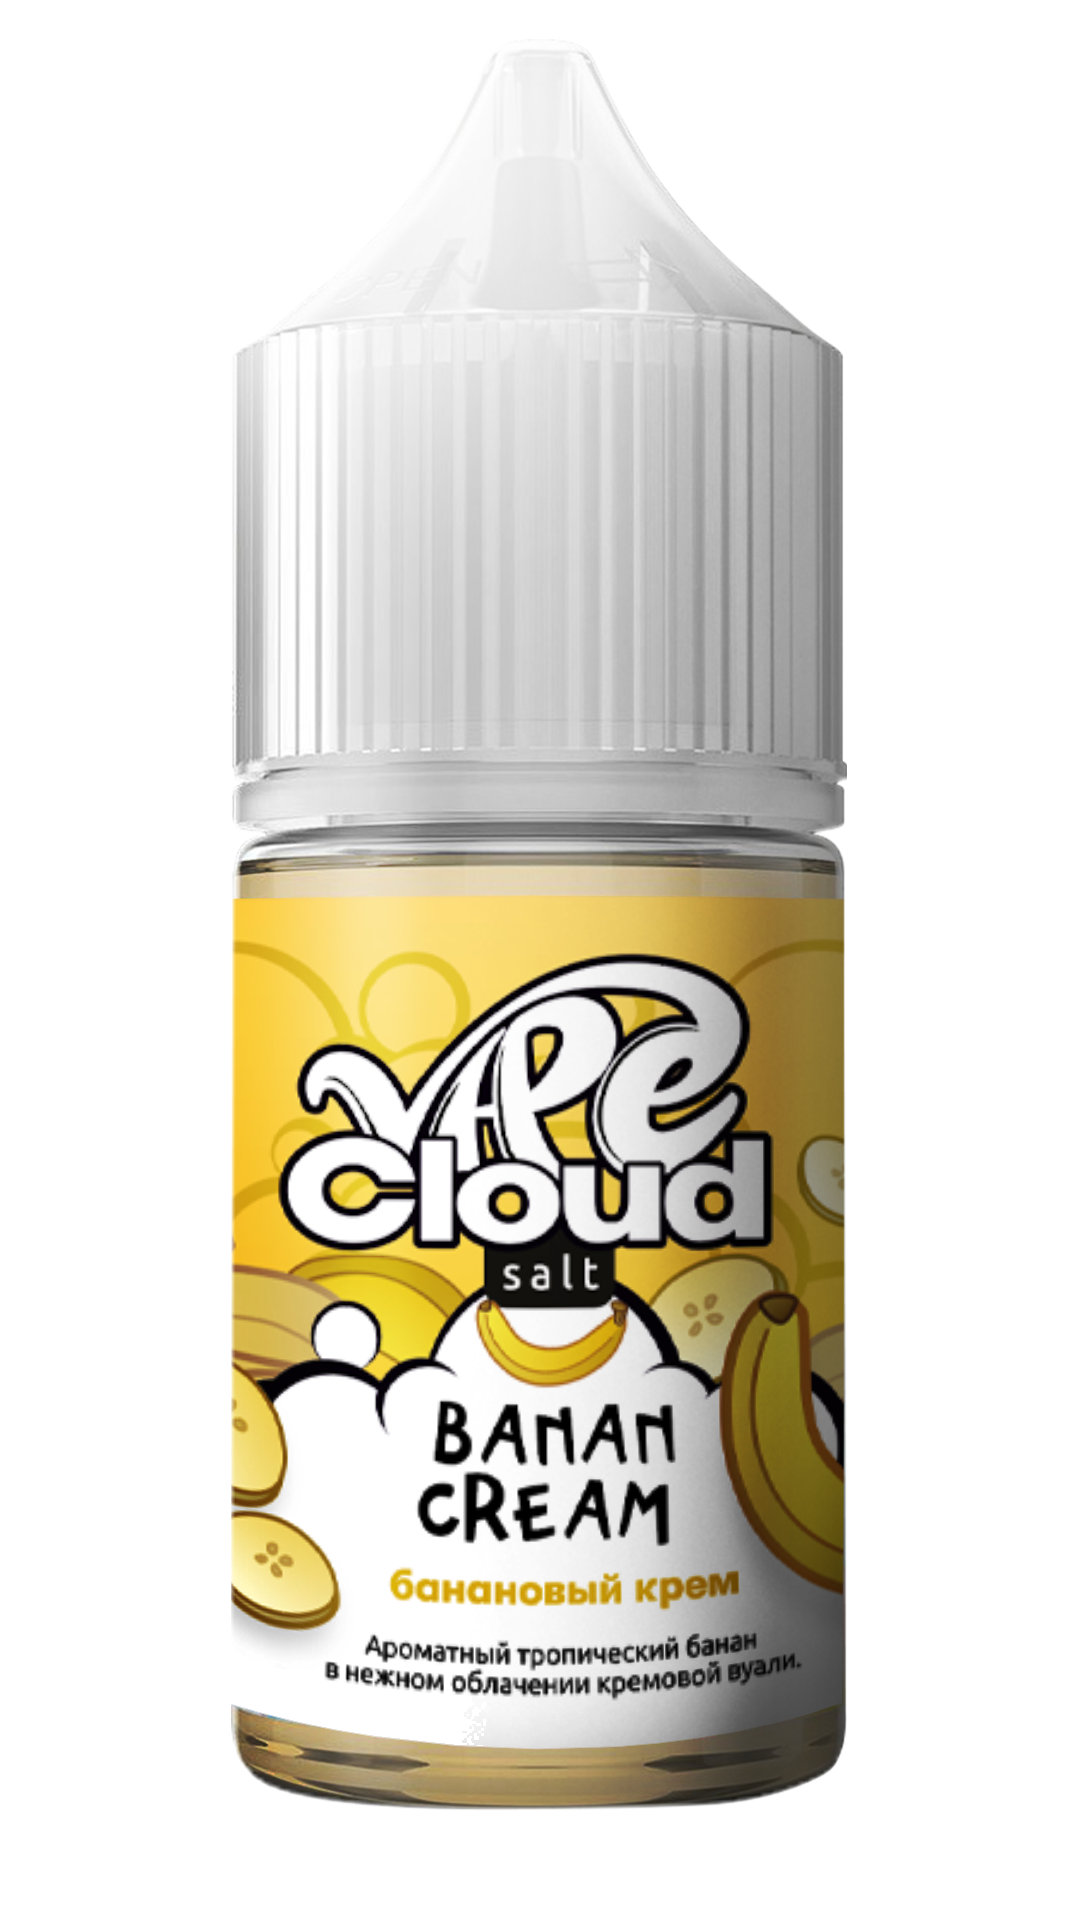 Vape Cloud / Банановый крем